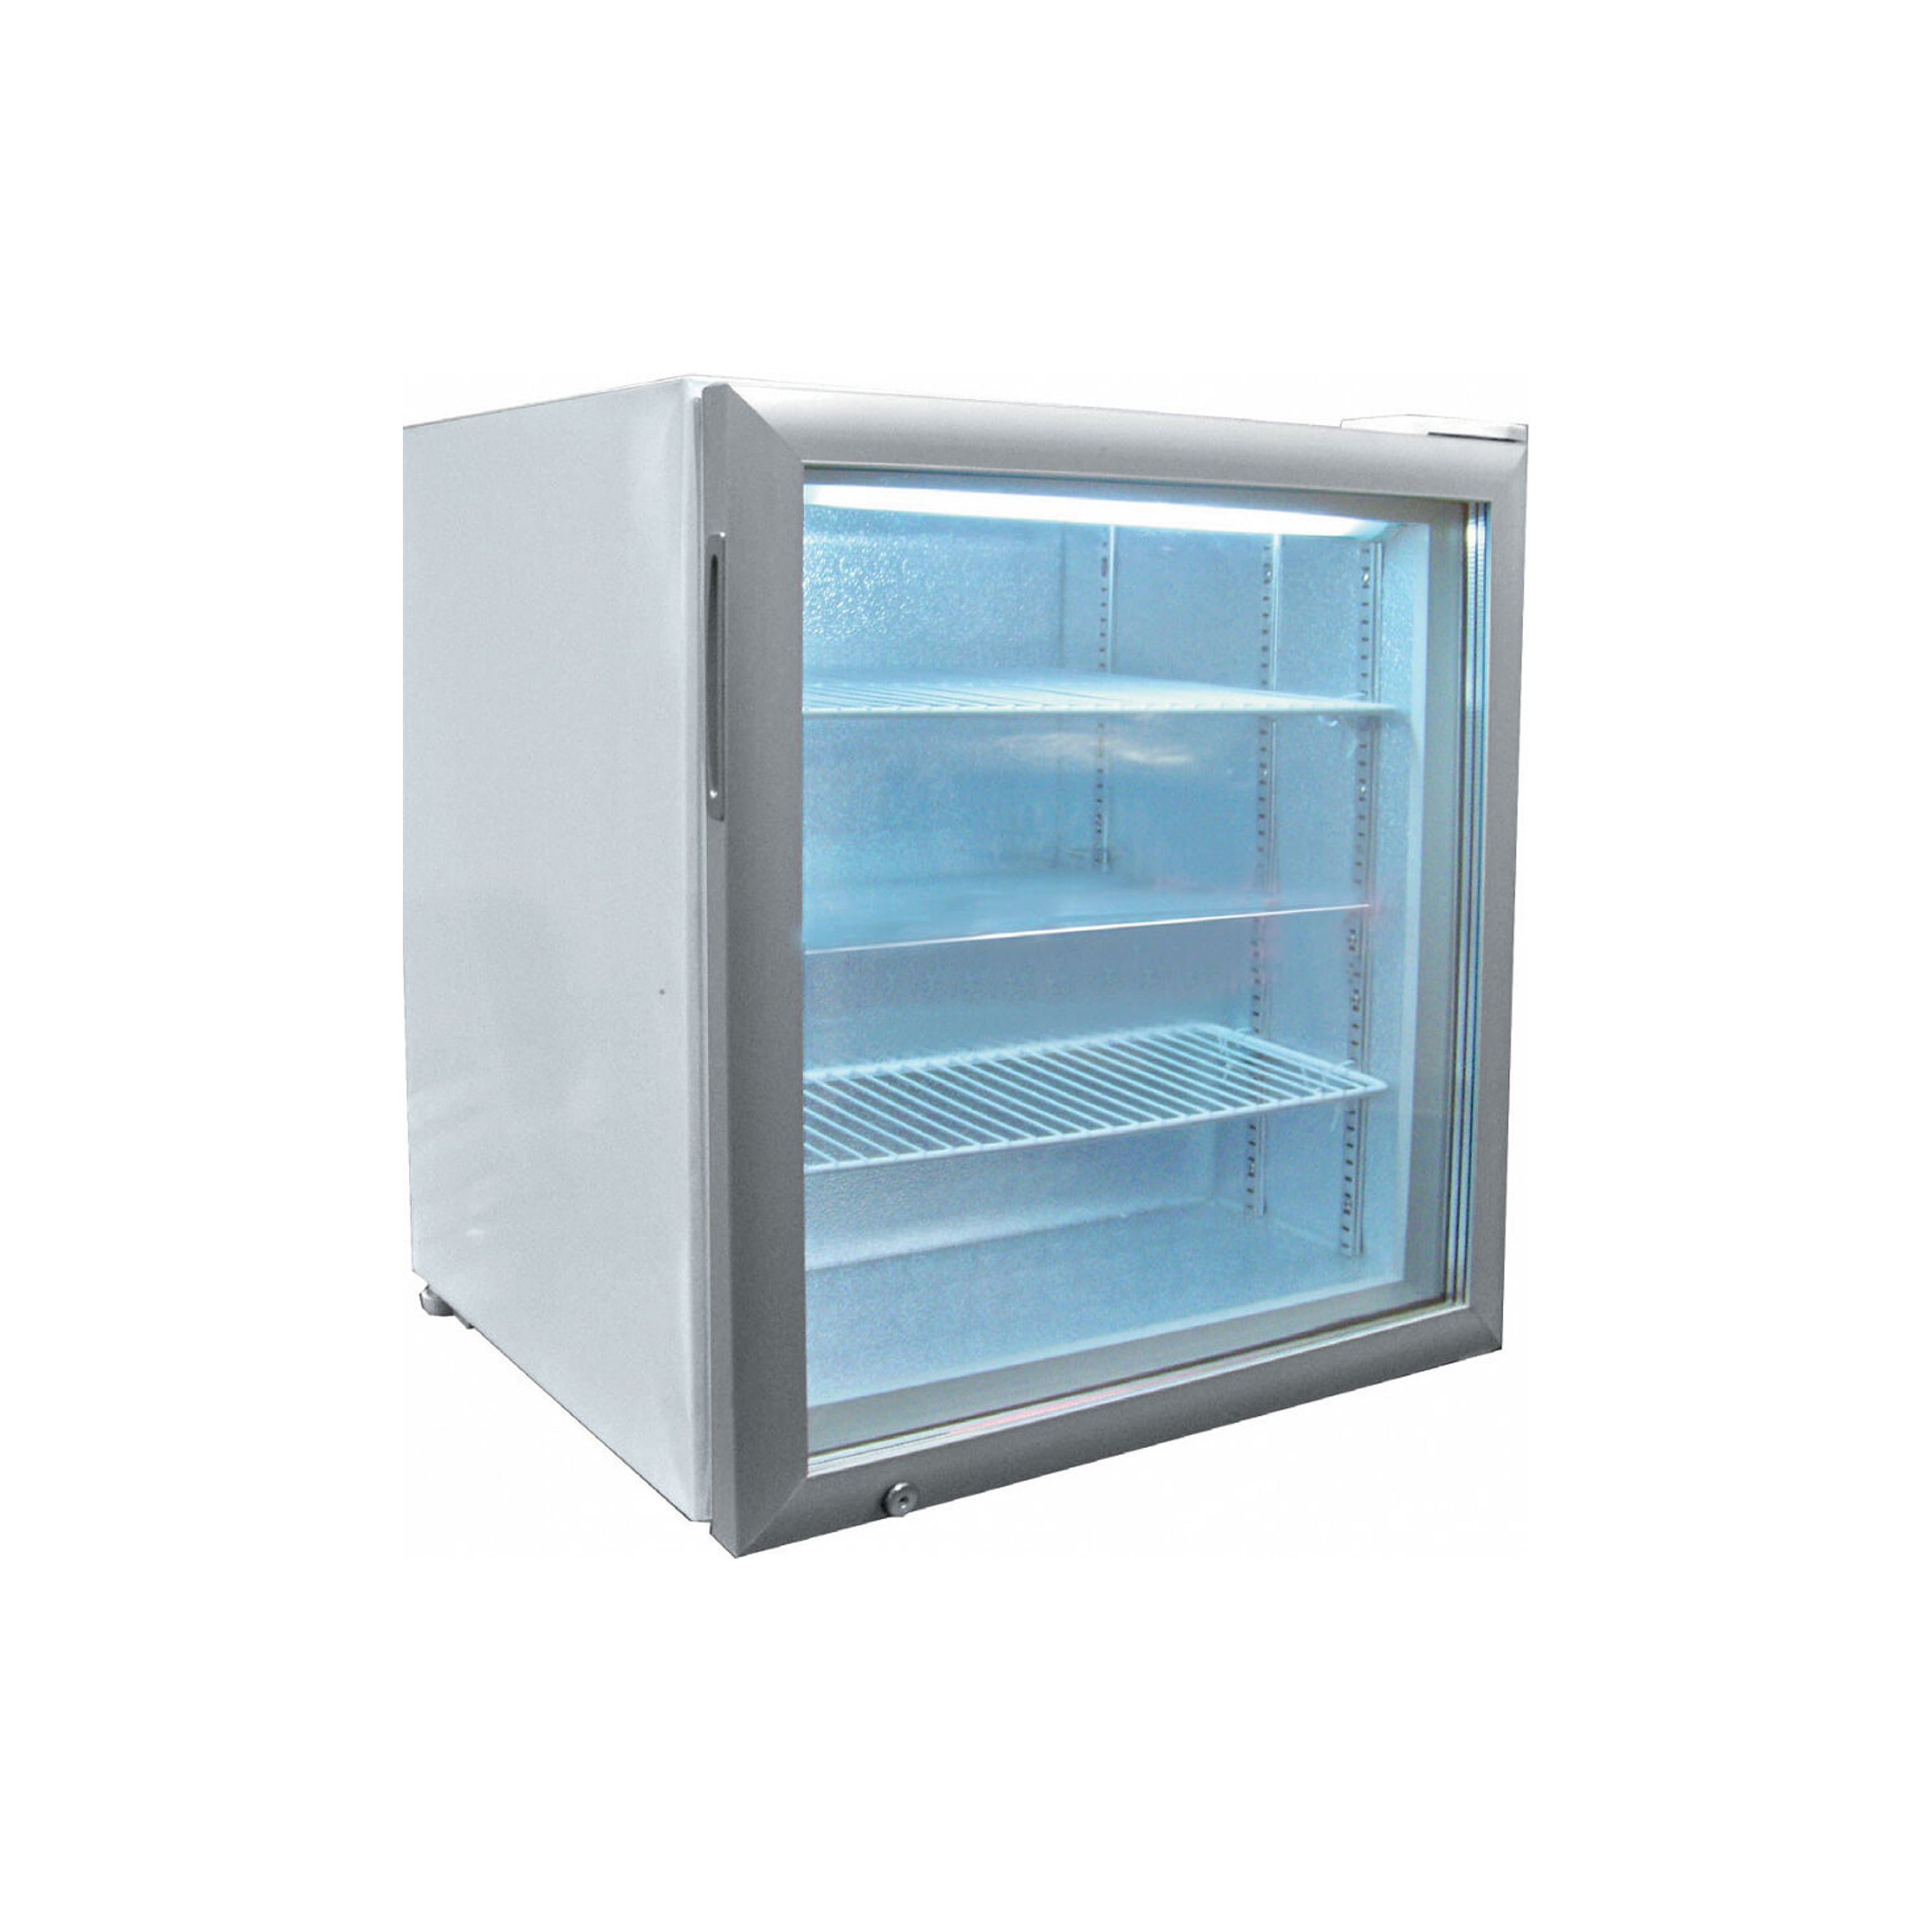 Excellence Industries - CTF-3HC, 24" Commercial Countertop Glass Door Merchandiser Freezer 3.4 cu.ft.